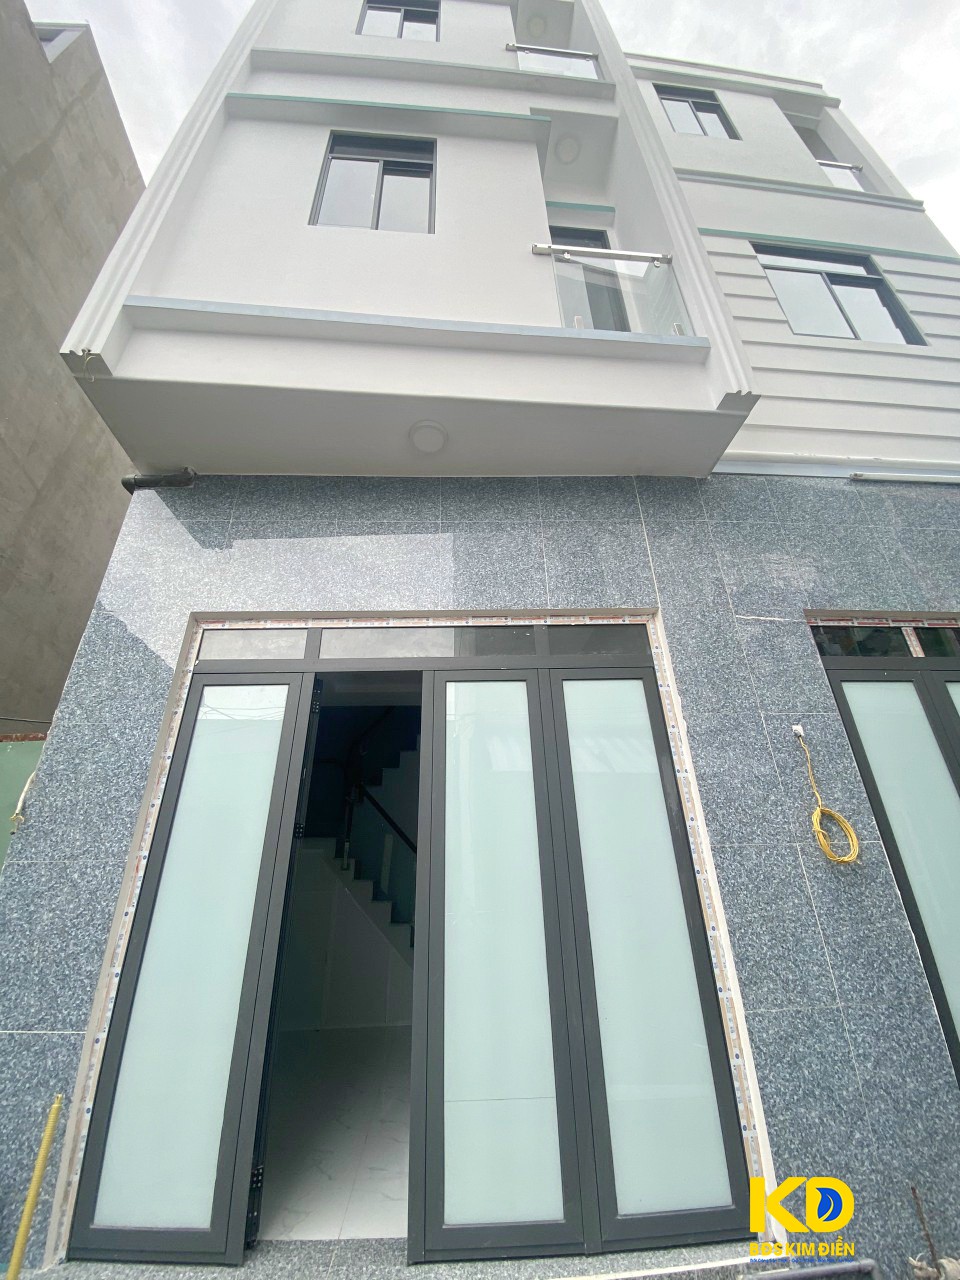 Bán nhà mới đẹp hẻm 4m 51 Đặng Nhữ Lâm thị trấn Nhà Bè (kho B)